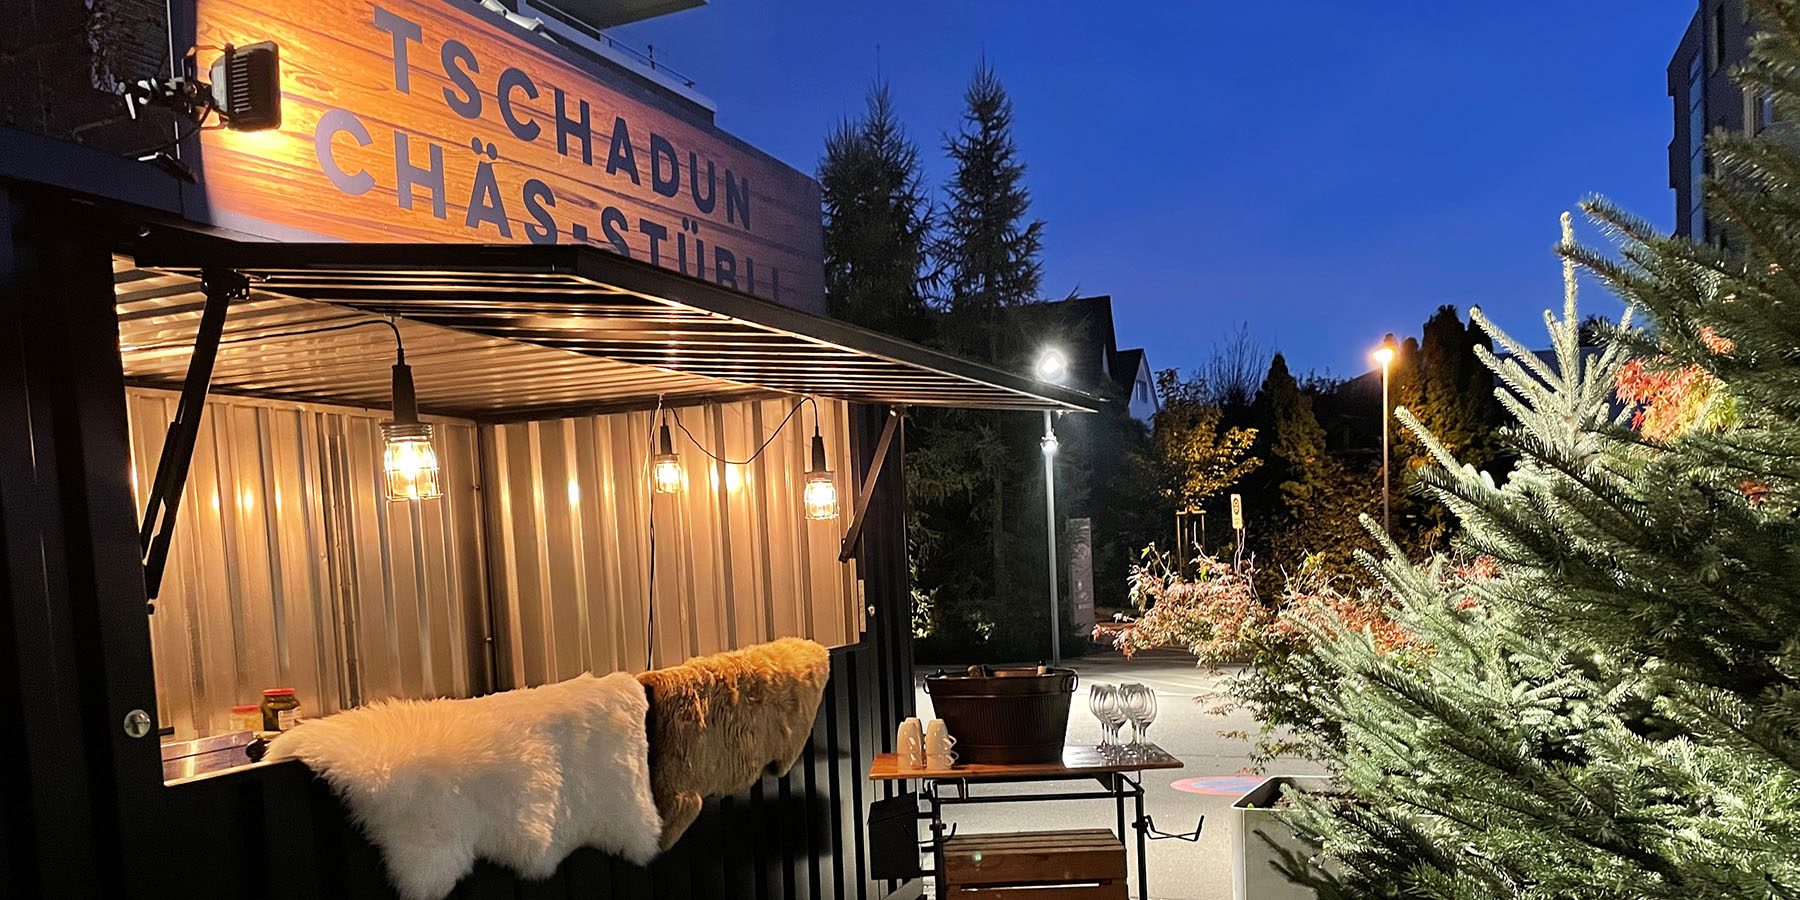 Tschadun Chaes-Stuebli, Restaurant Tschadun, Hotel Allegra Lodge, Zurich Airport, welcome hotels Schweiz